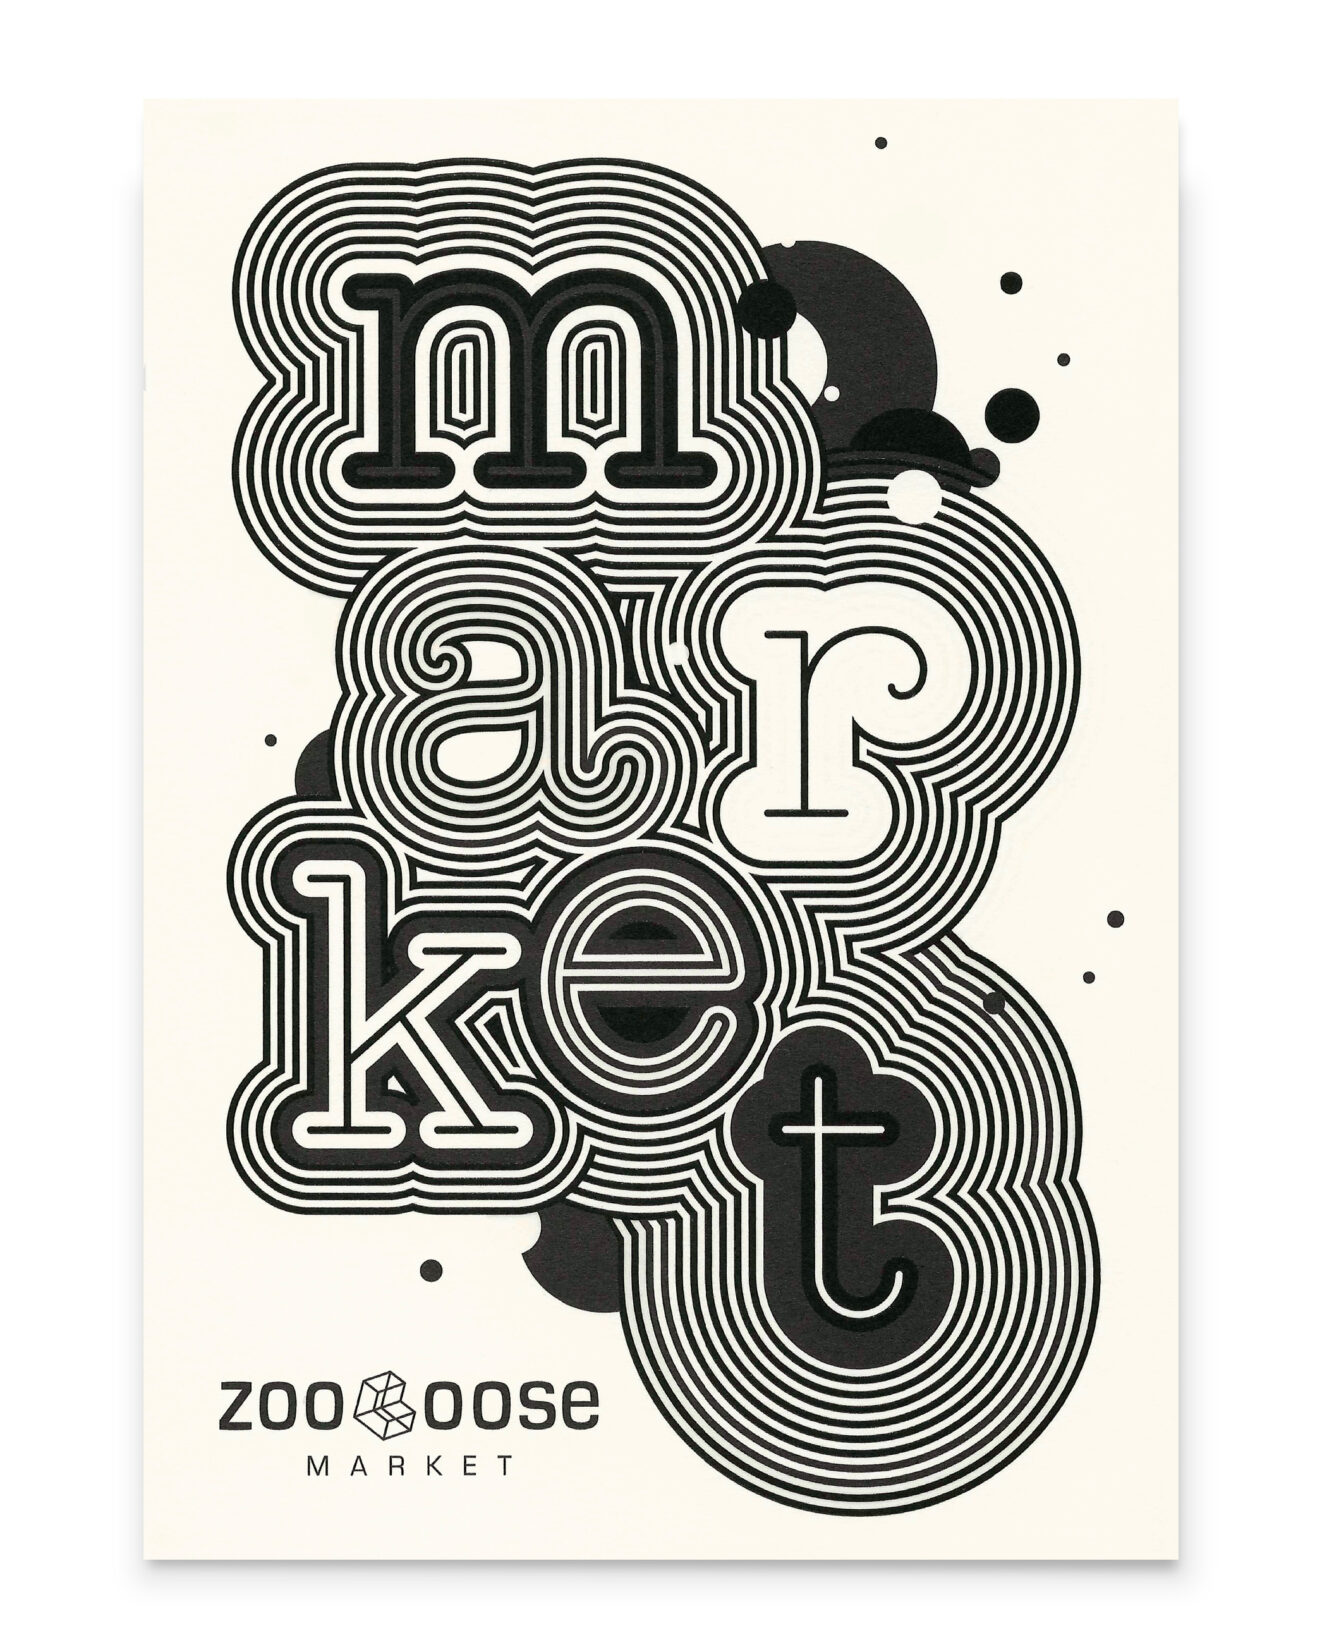 Postkarte für Zooloose Market mit spannendem Grafikdesign von Grafikdesign Cueni Basel.